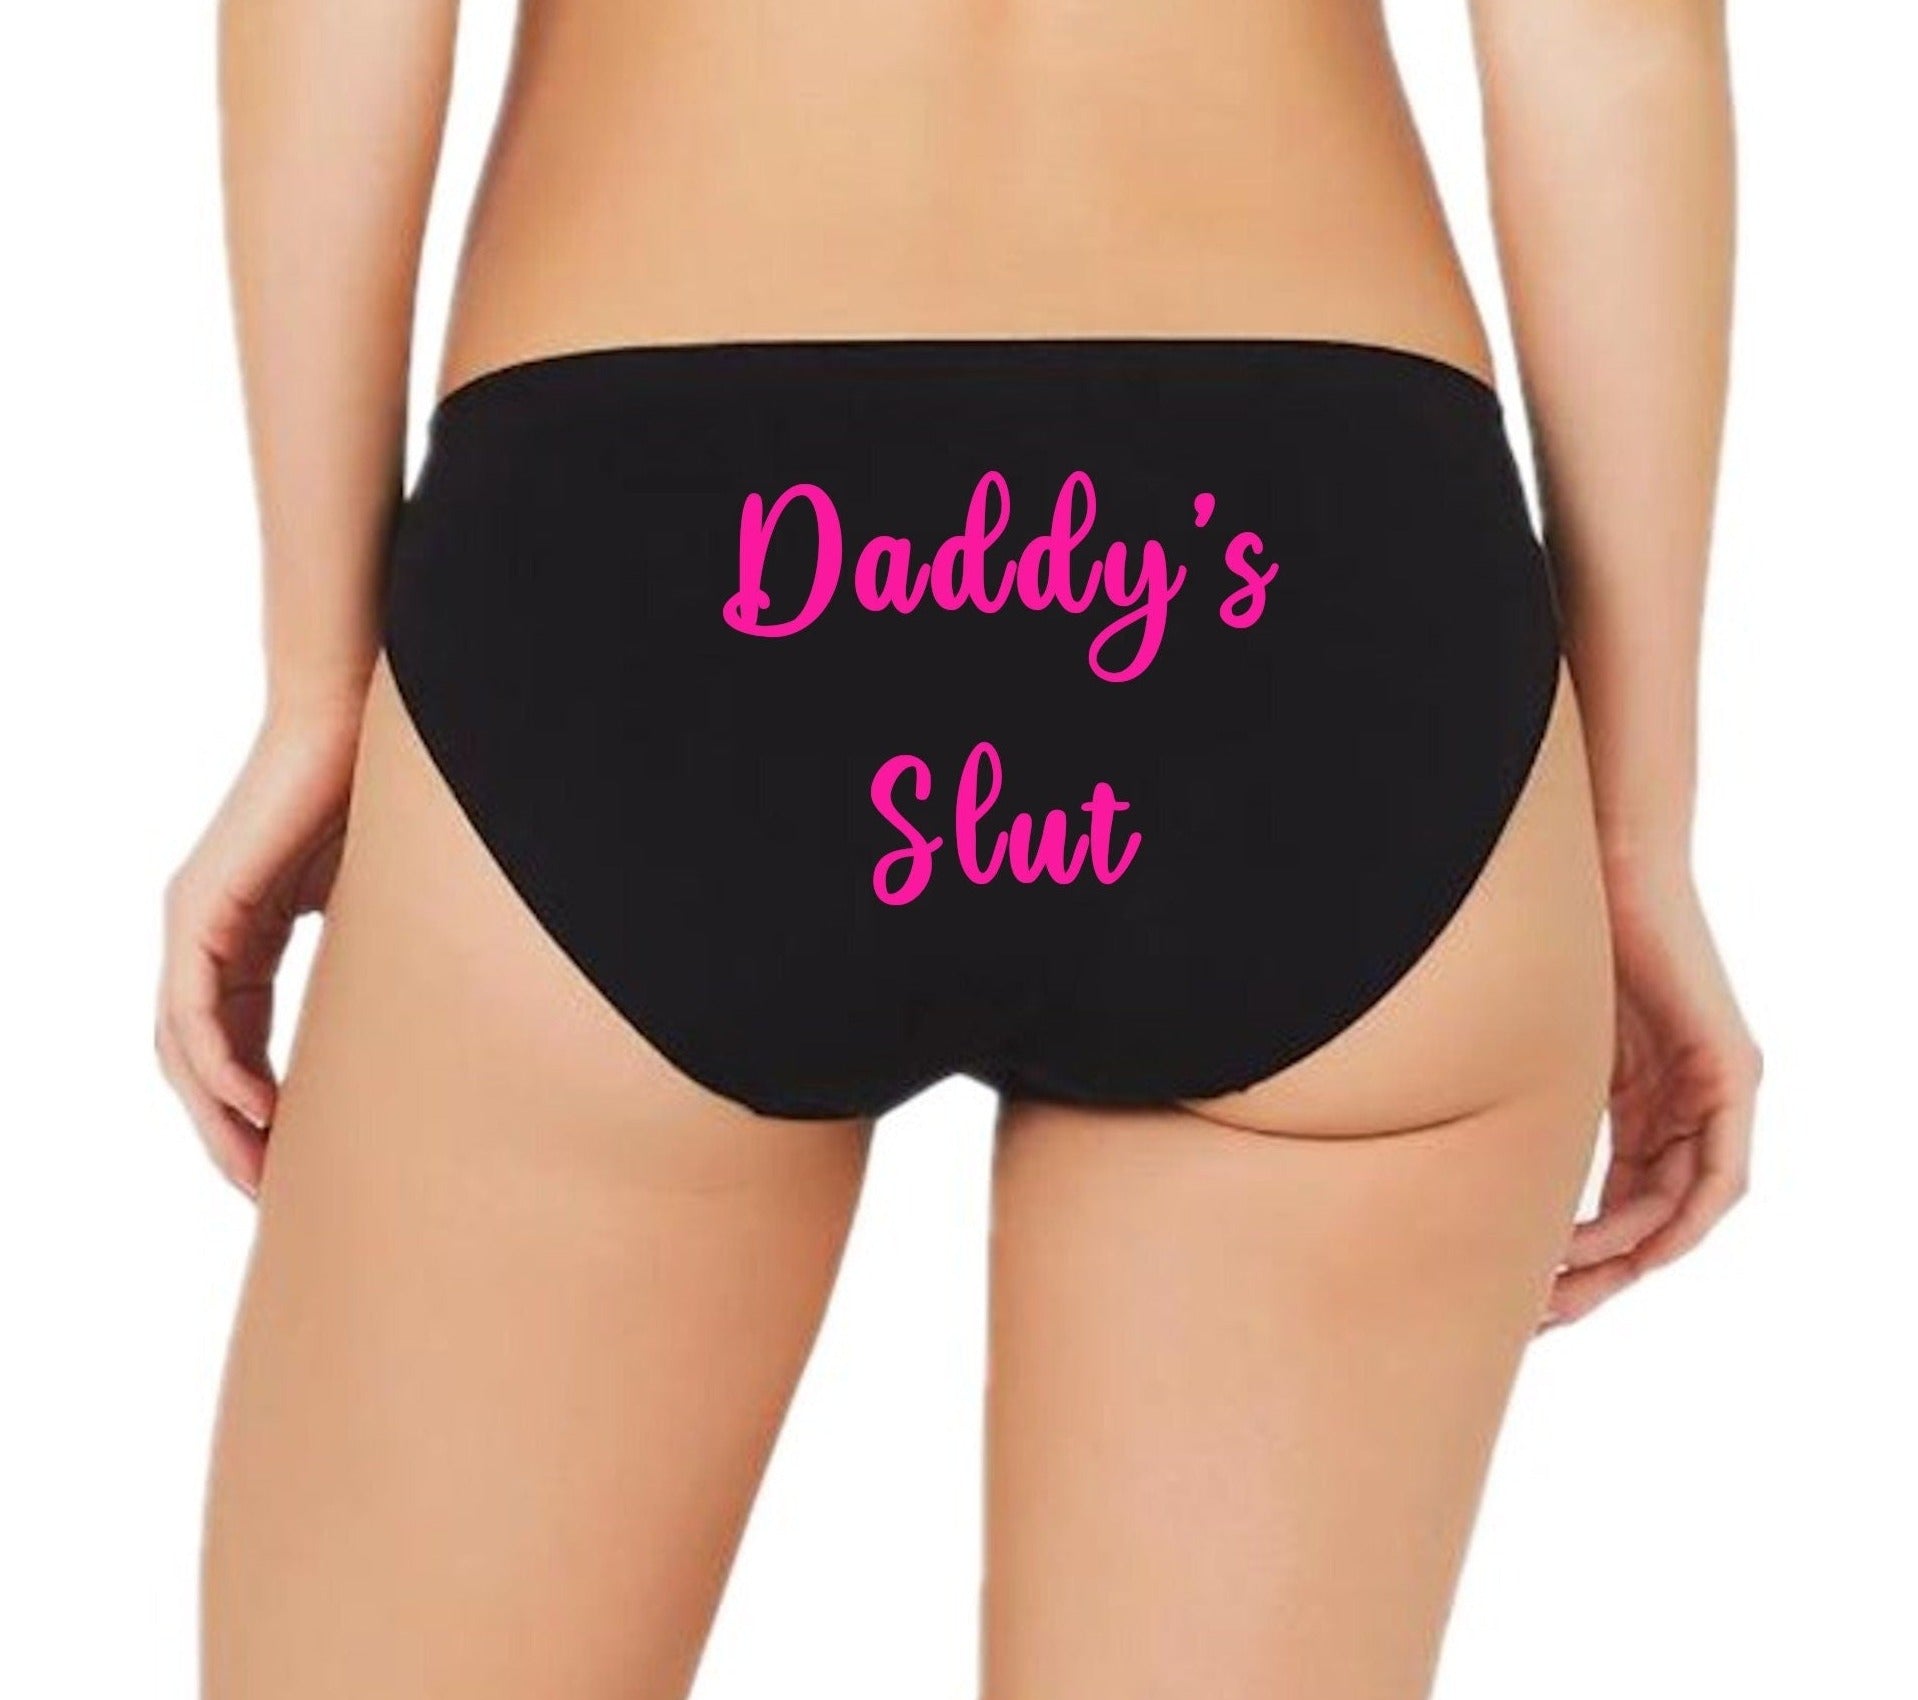 Dadddys Slut DDLG Panties